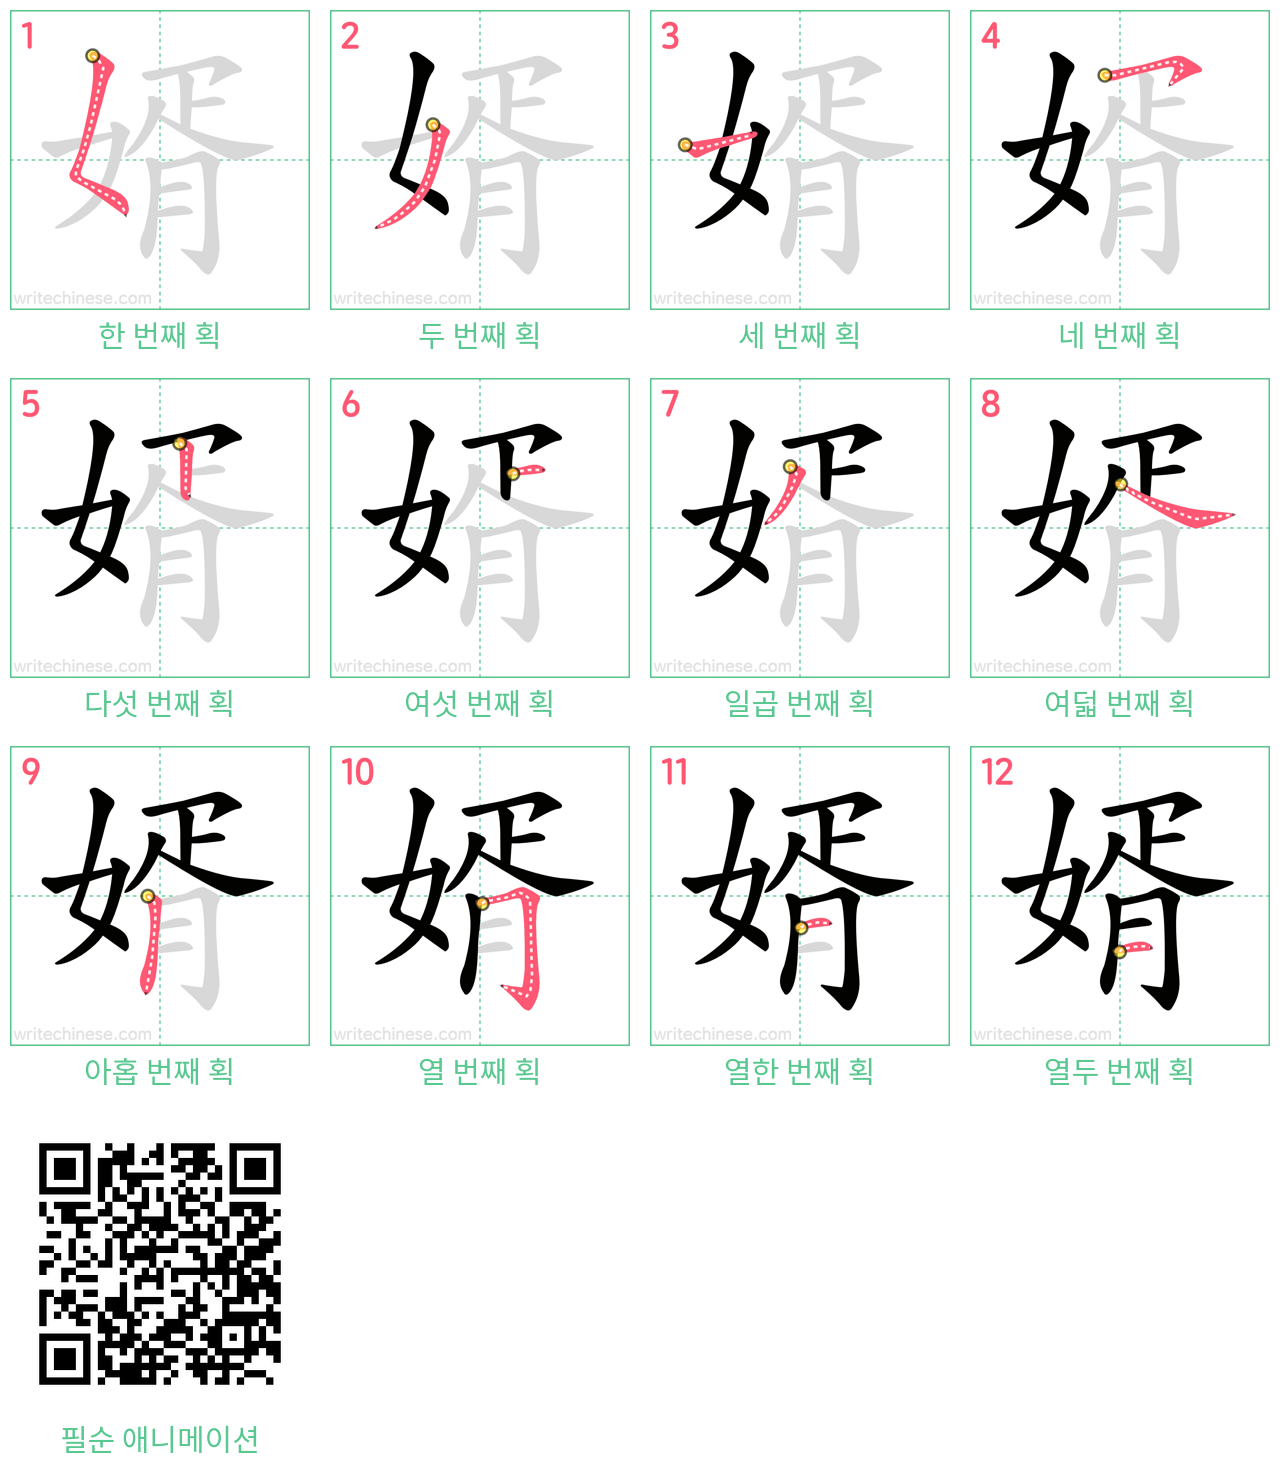 婿 step-by-step stroke order diagrams